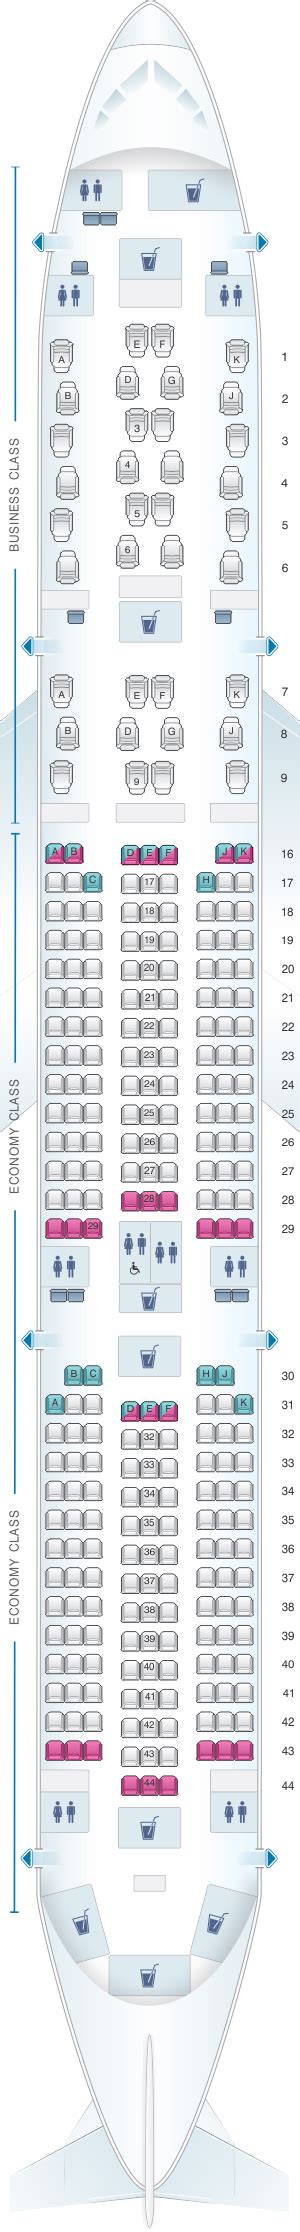 Qatar Airways Qsuites Seat Map My Xxx Hot Girl